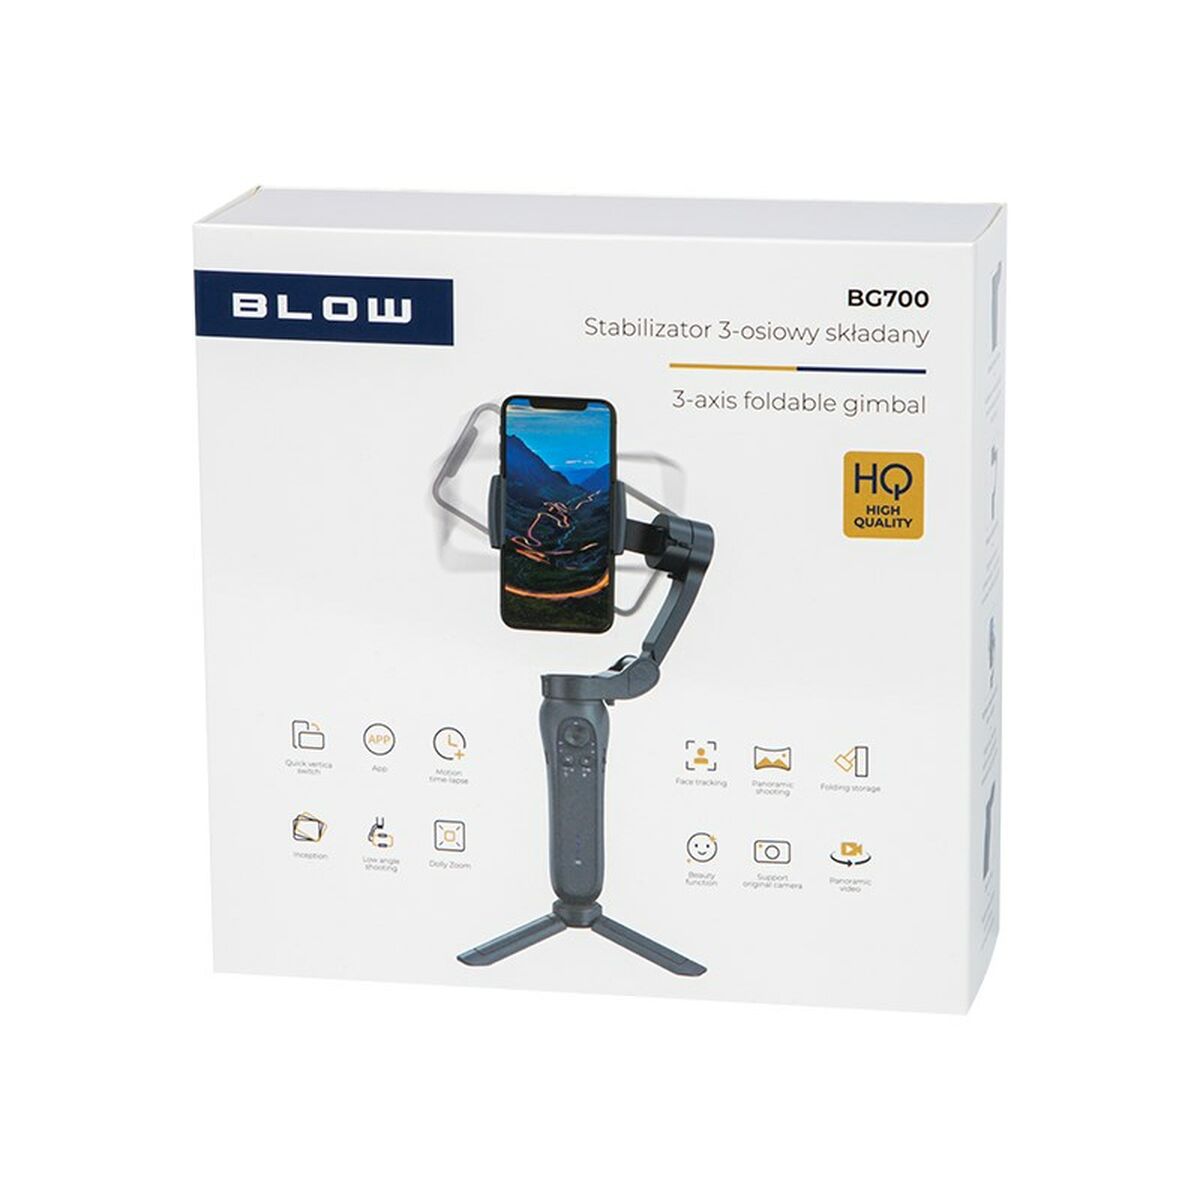 Стабилизатор камеры для смартфона Blow BG700